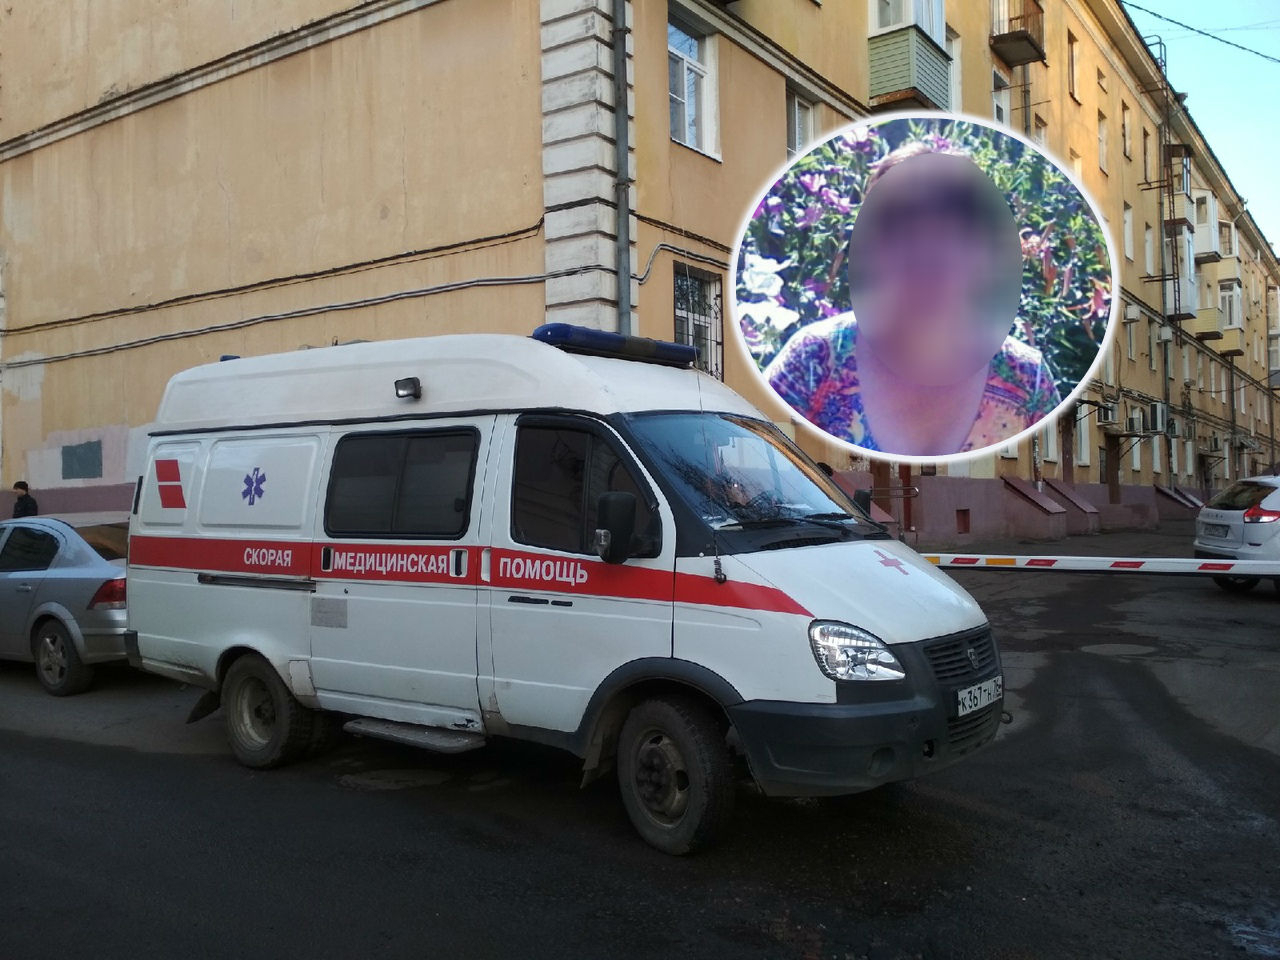 После похорон заподозрили коронавирус: в селе под Ярославлем взяли тест у женщины